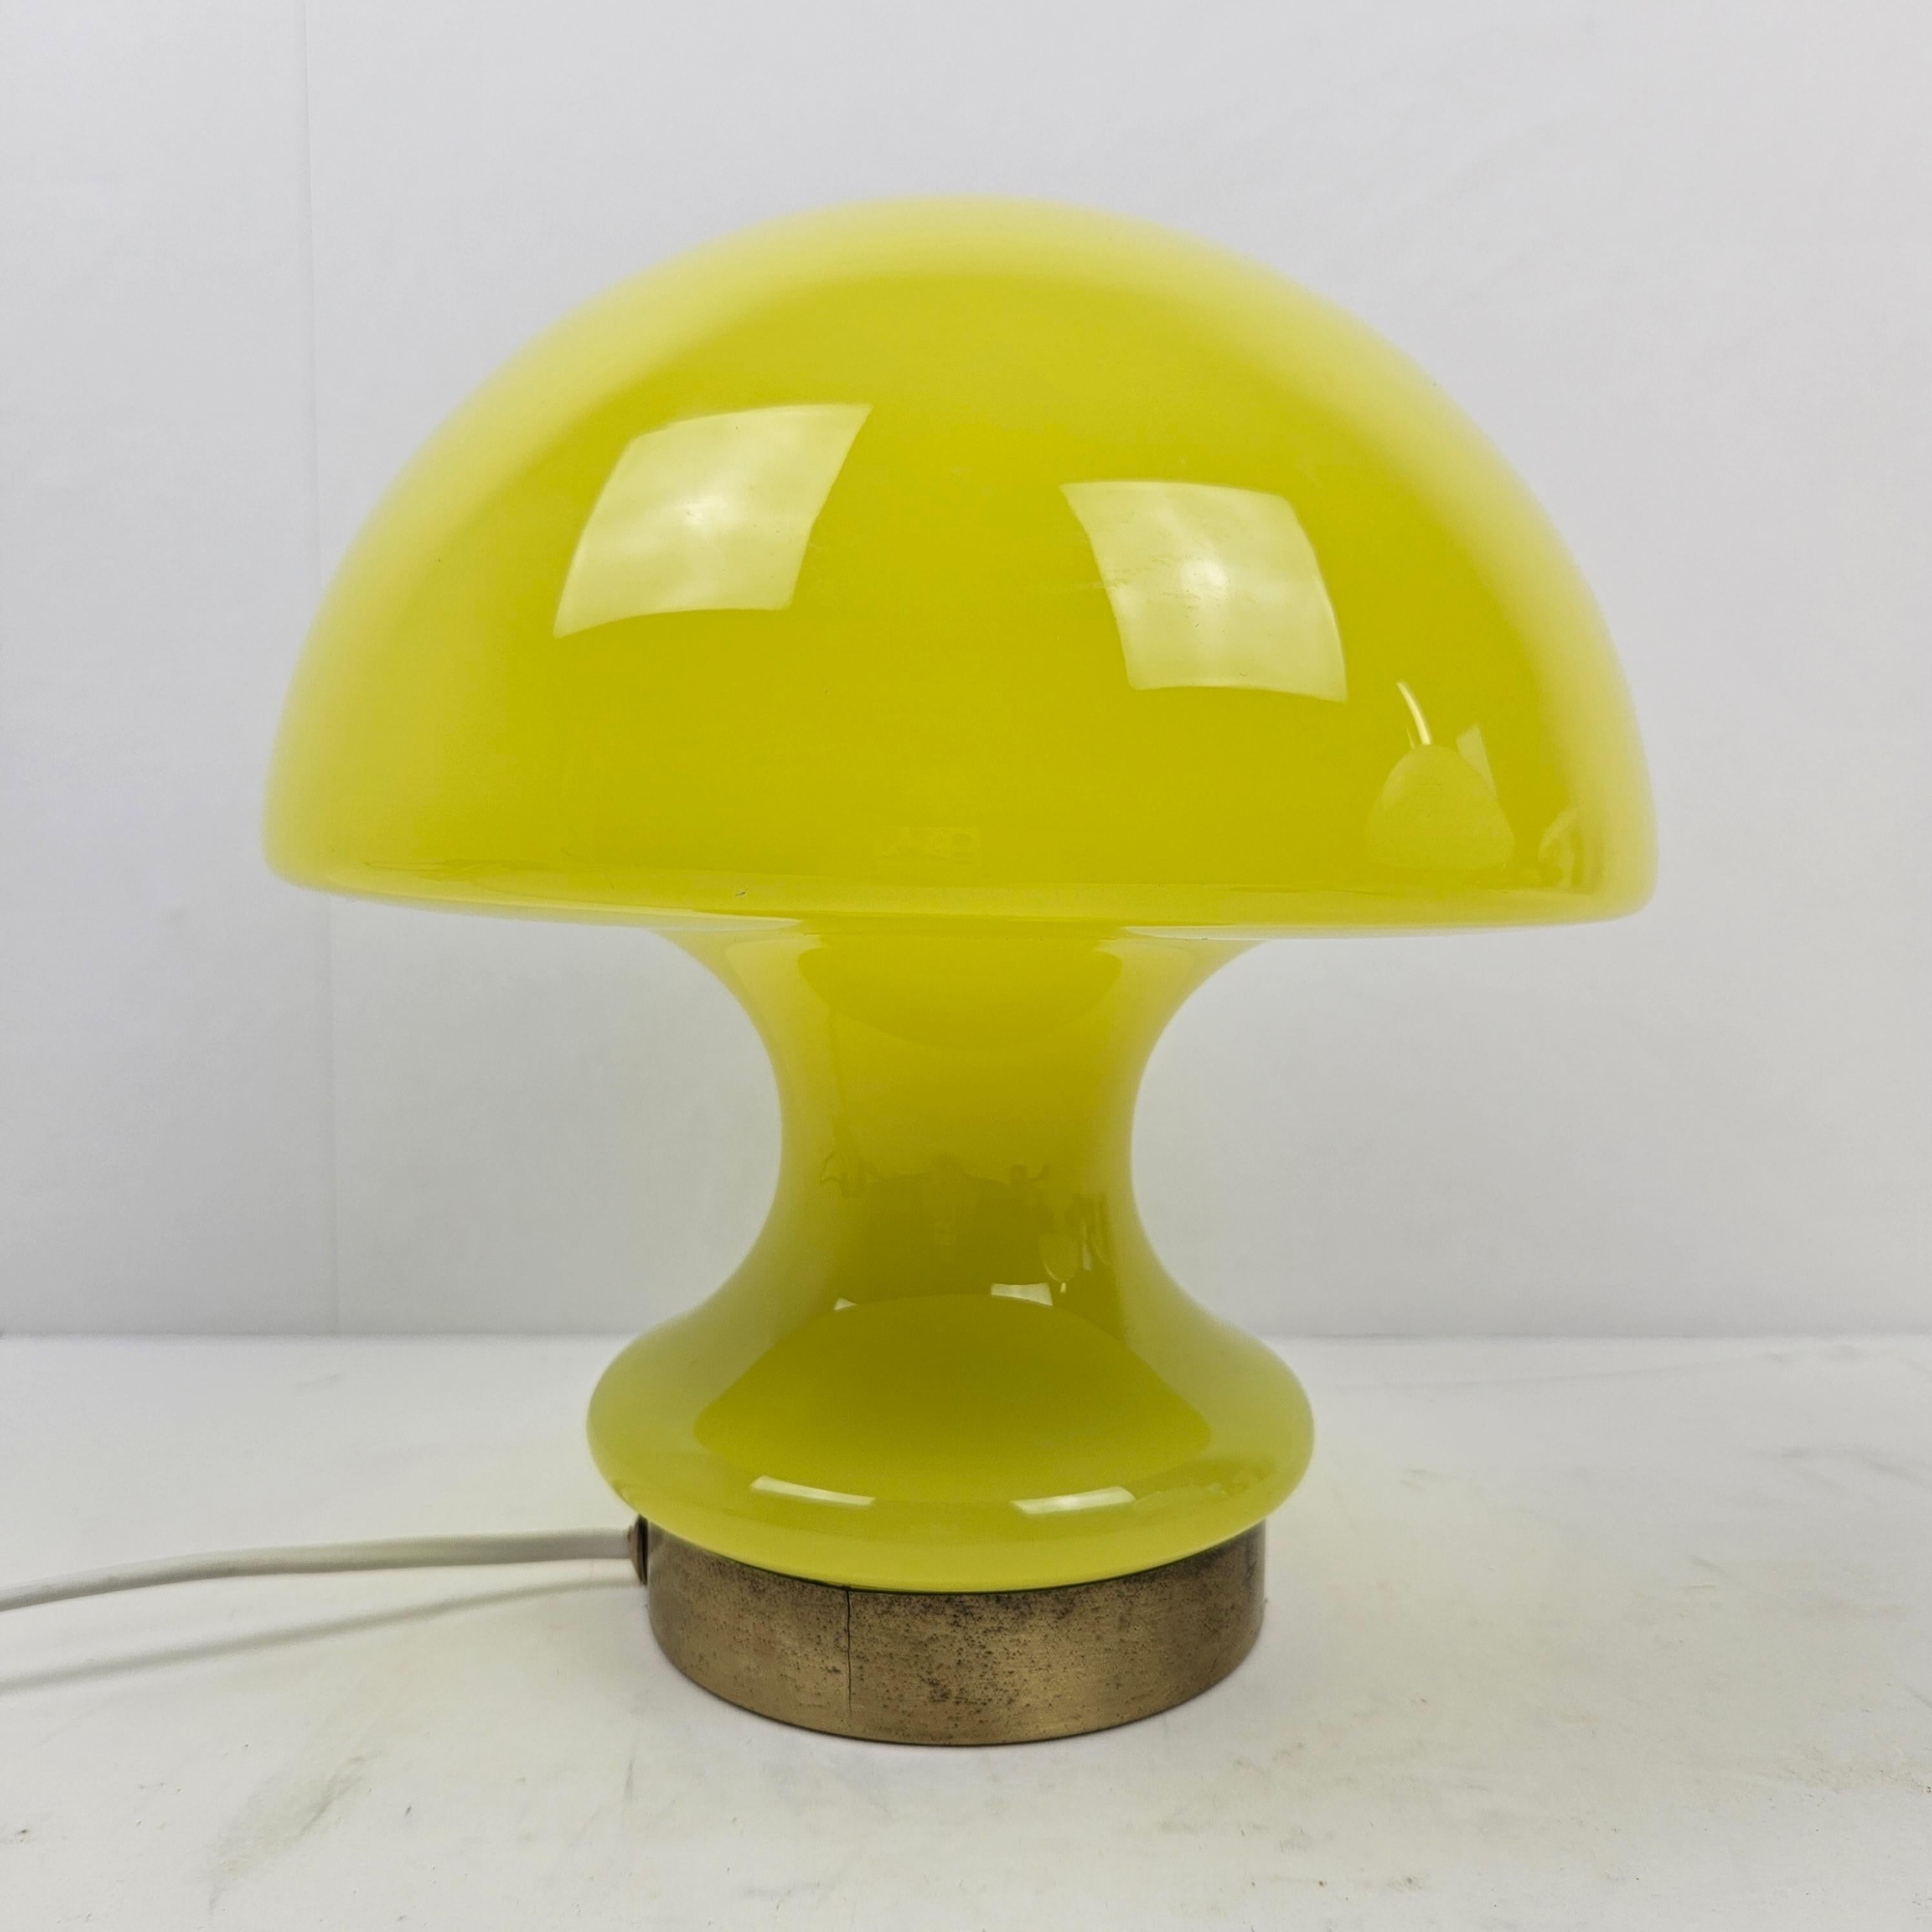 Sehr schöne Tischlampe, hergestellt in Italien in den 70er Jahren.

Die elegante Form lässt ihn wie einen Pilz aussehen.
Die Kombination mit dem gelben Glas und dem Messing ergibt einen atemberaubenden Effekt.

Einige normale Gebrauchsspuren, siehe